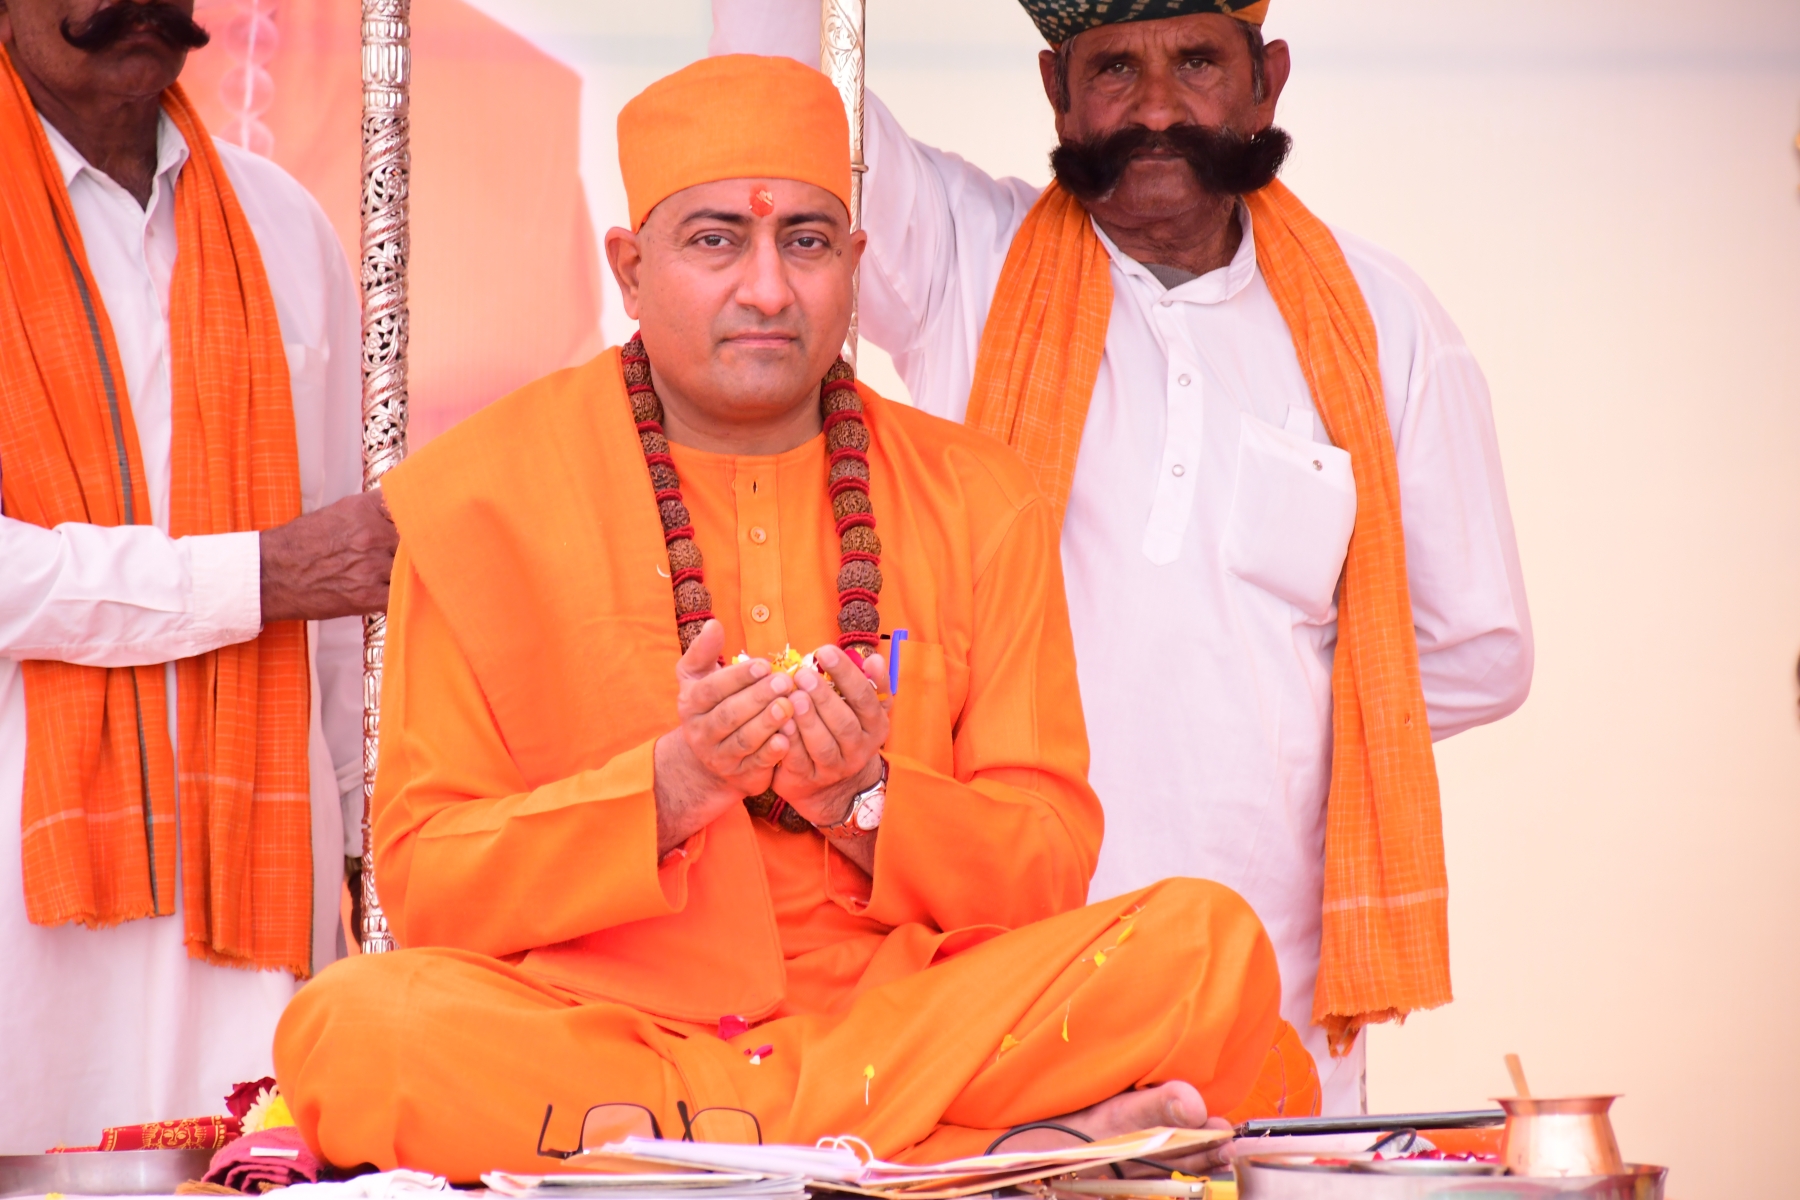 Shri Shri 1008 Mahamandaleshwar Swami Kushal Giri Maharaj